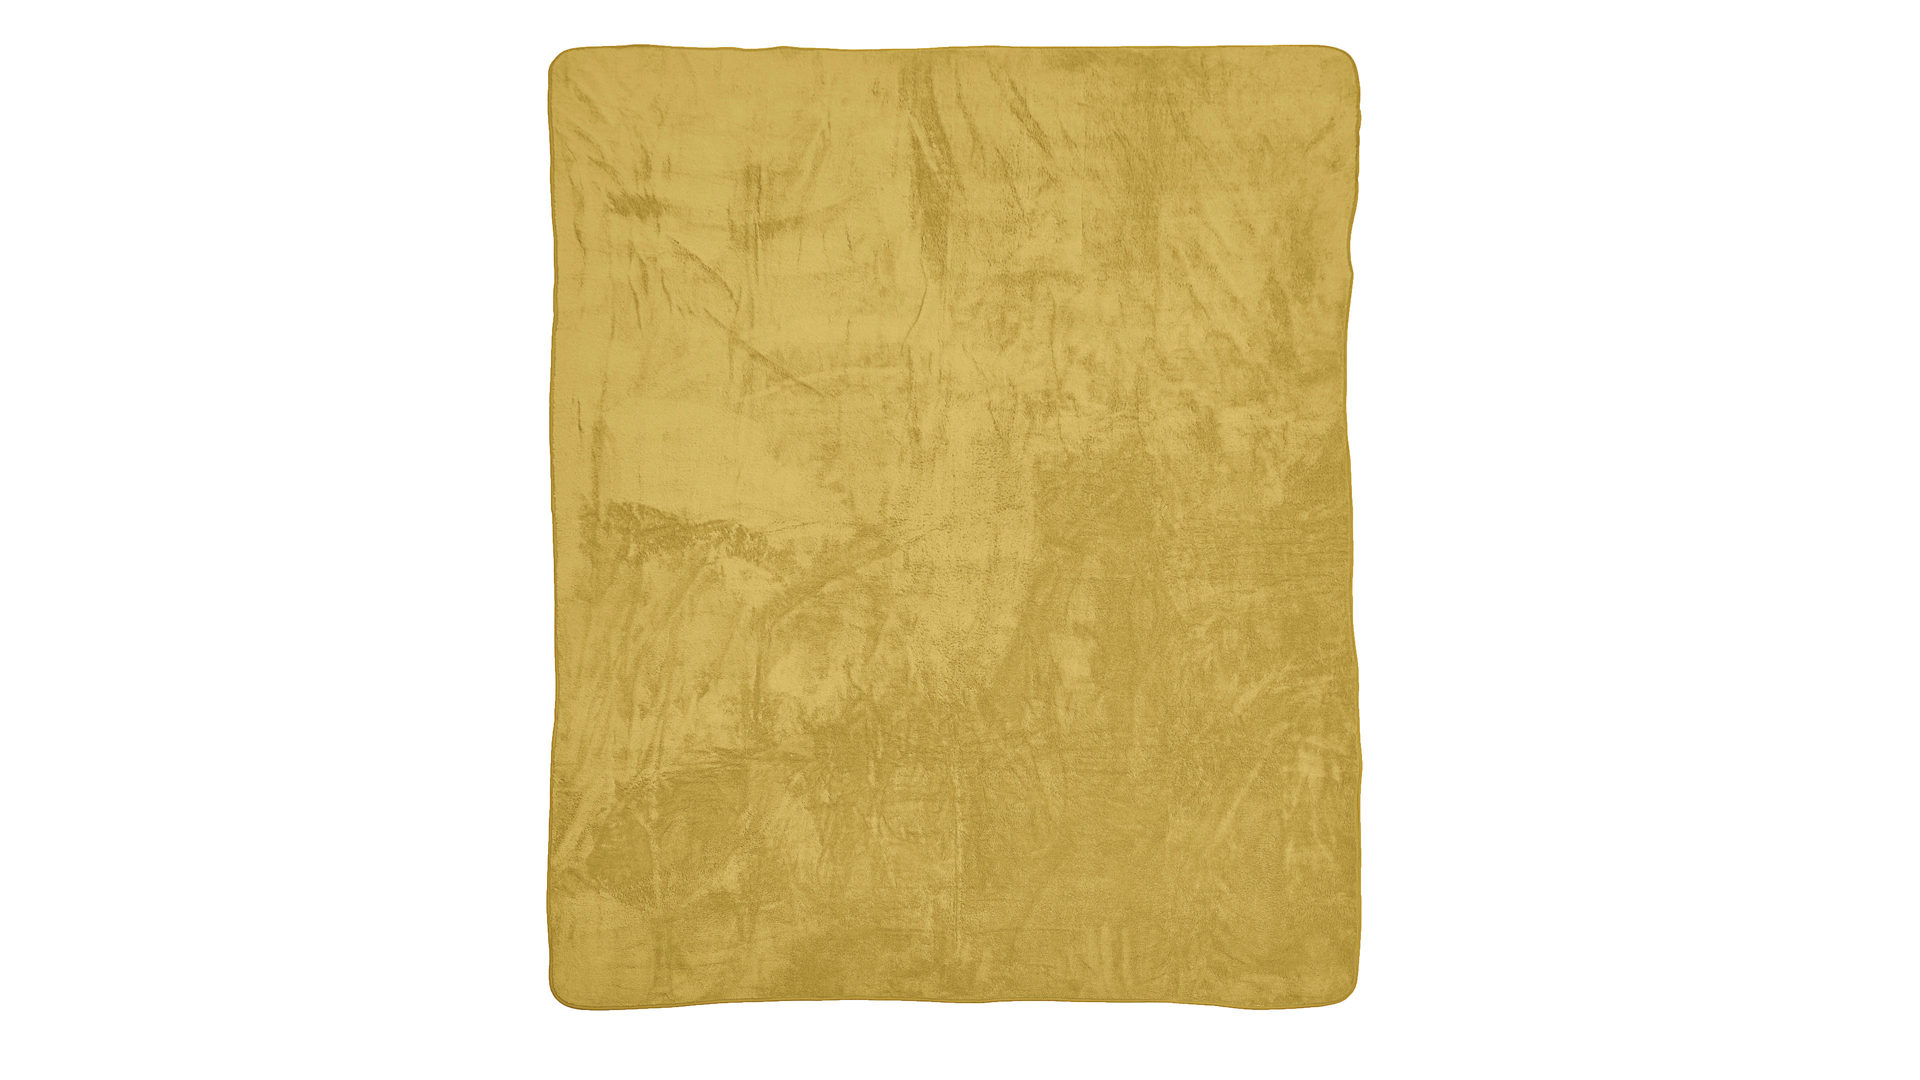 Wohndecke Done by karabel home company aus Stoff in Gelb Done Wohndecke Blanket Softie goldfarbener Teddystoff – ca. 150 x 200 cm